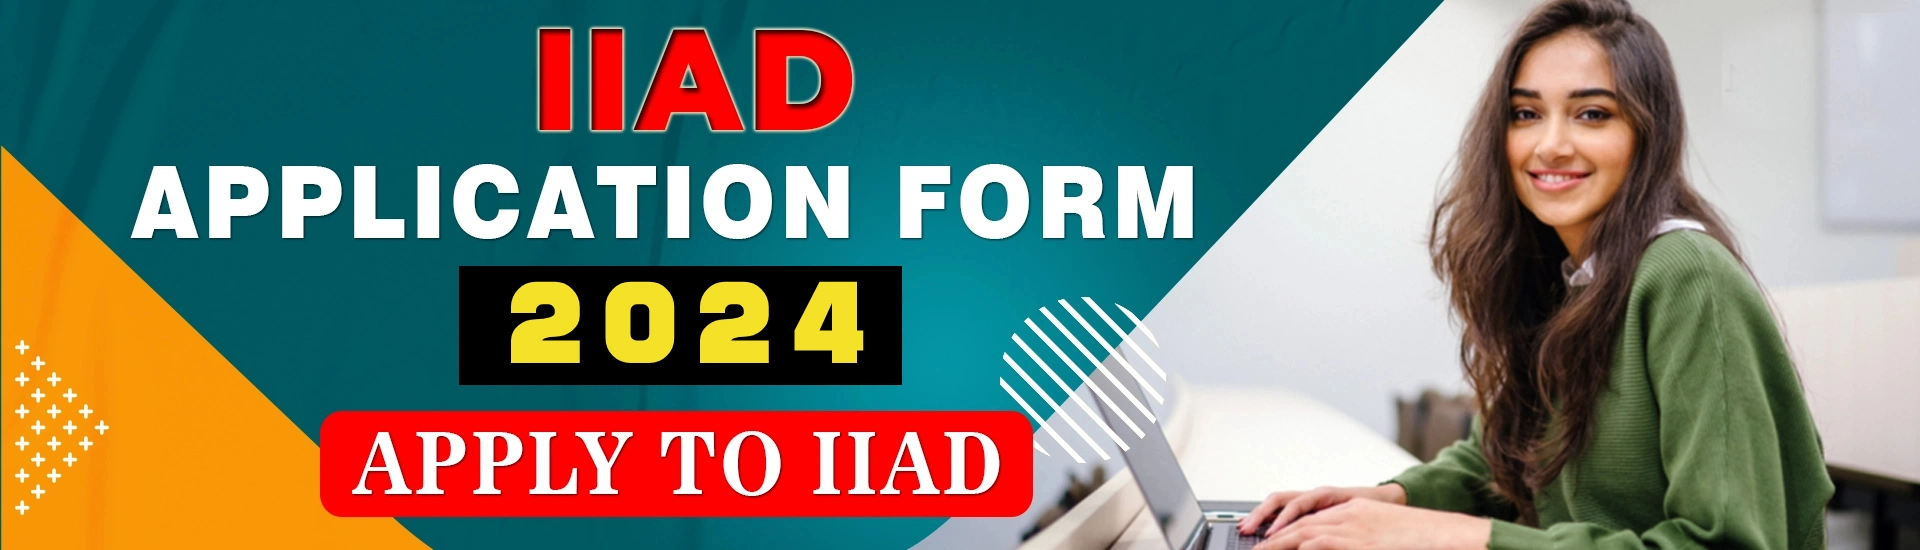 IIAD APPLICATION FORM 2024